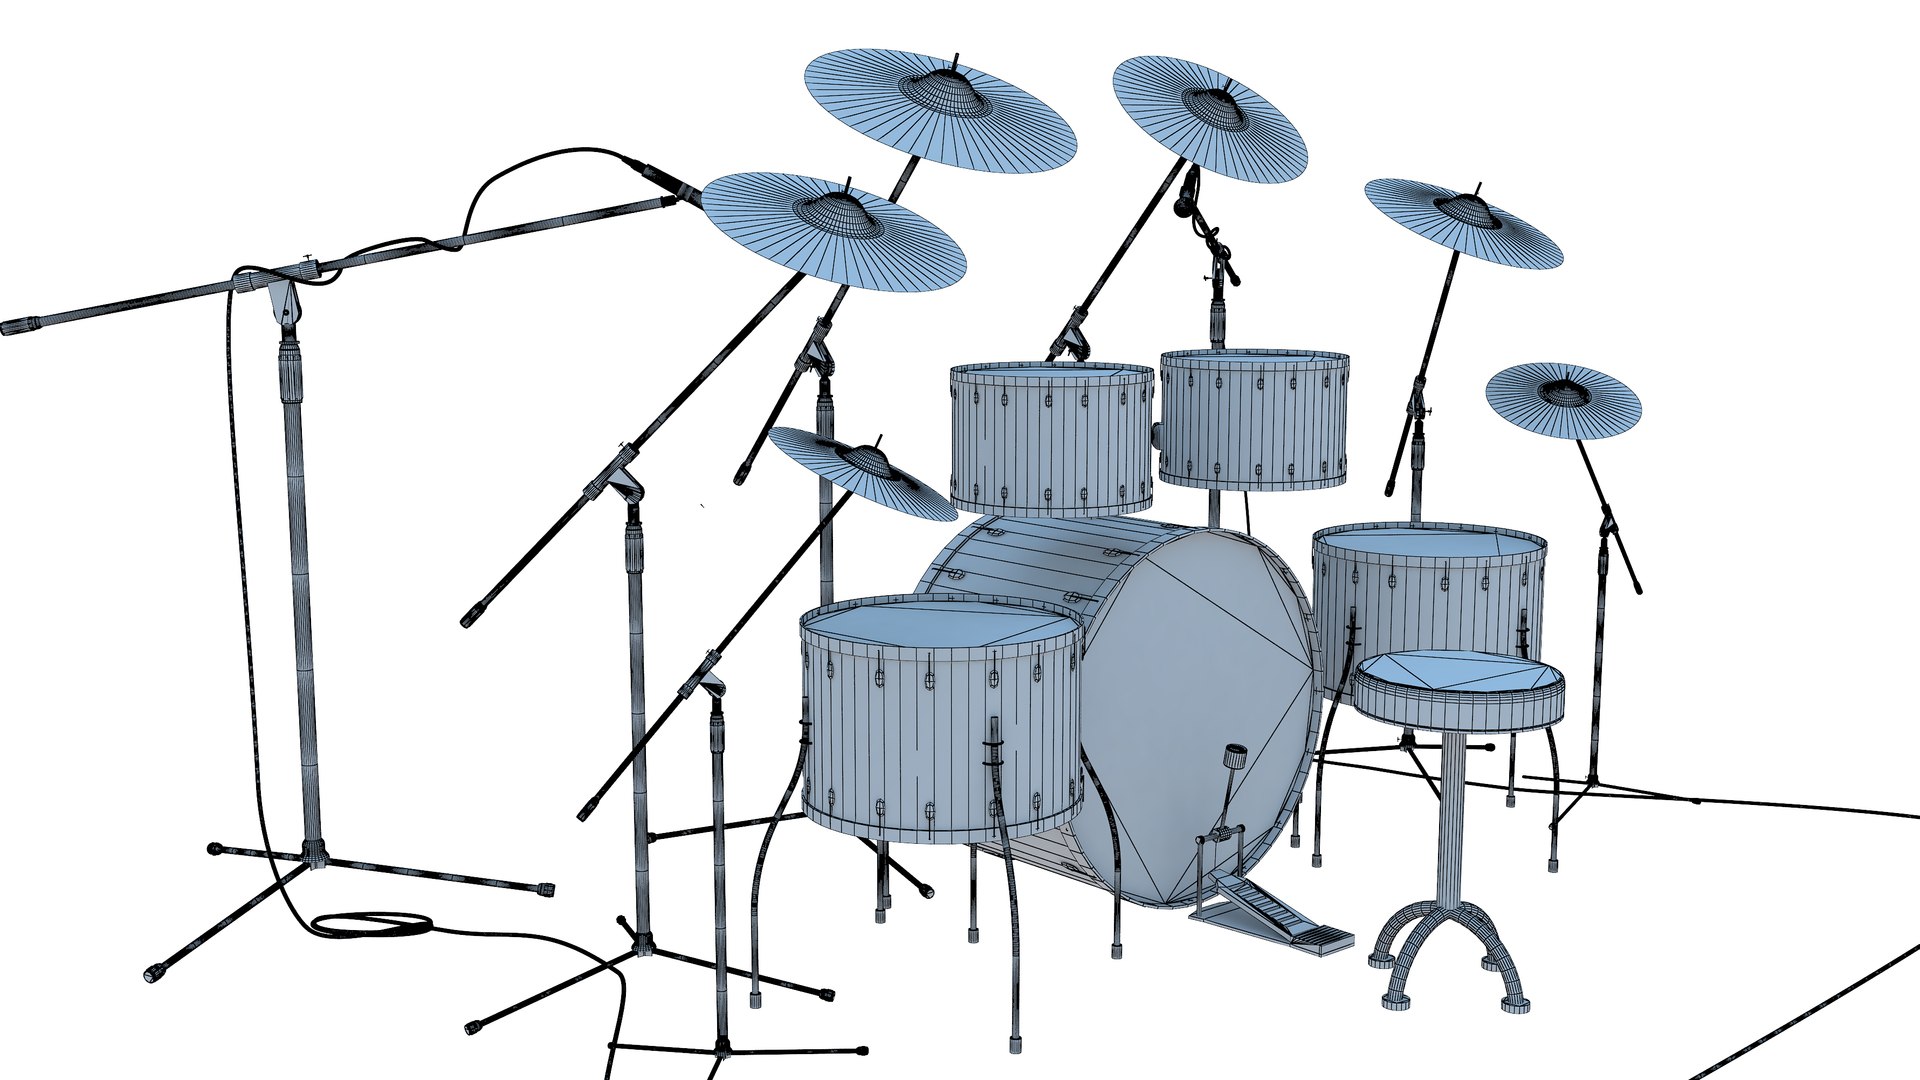 Drum Set 3D Model - TurboSquid 1573335